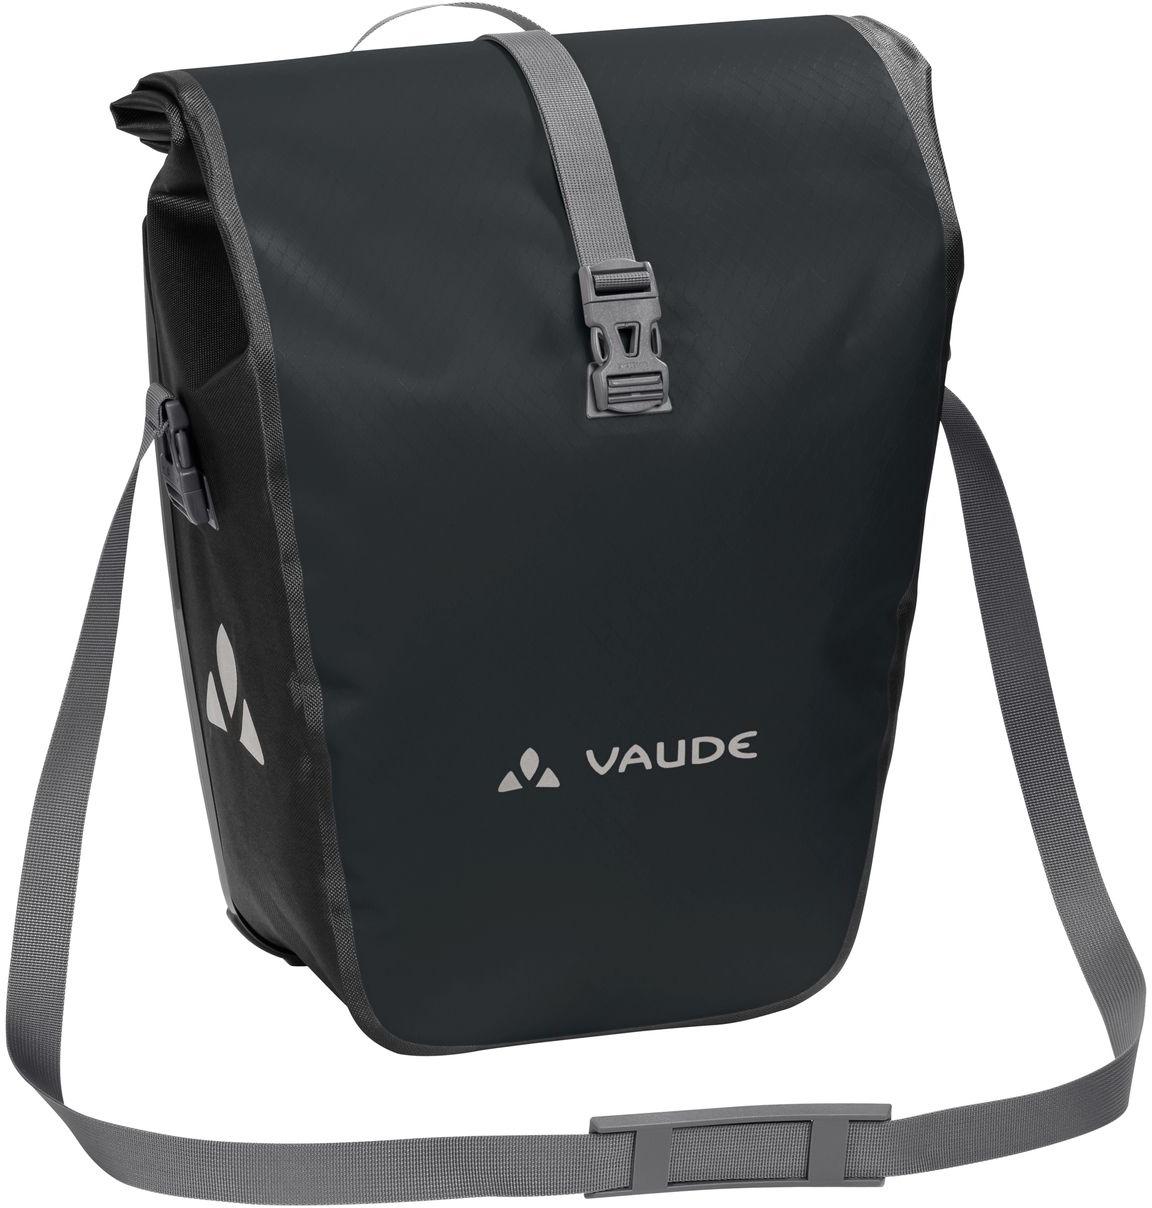 Vaude Aqua Back Pannier Bag Black - Pack Of 2